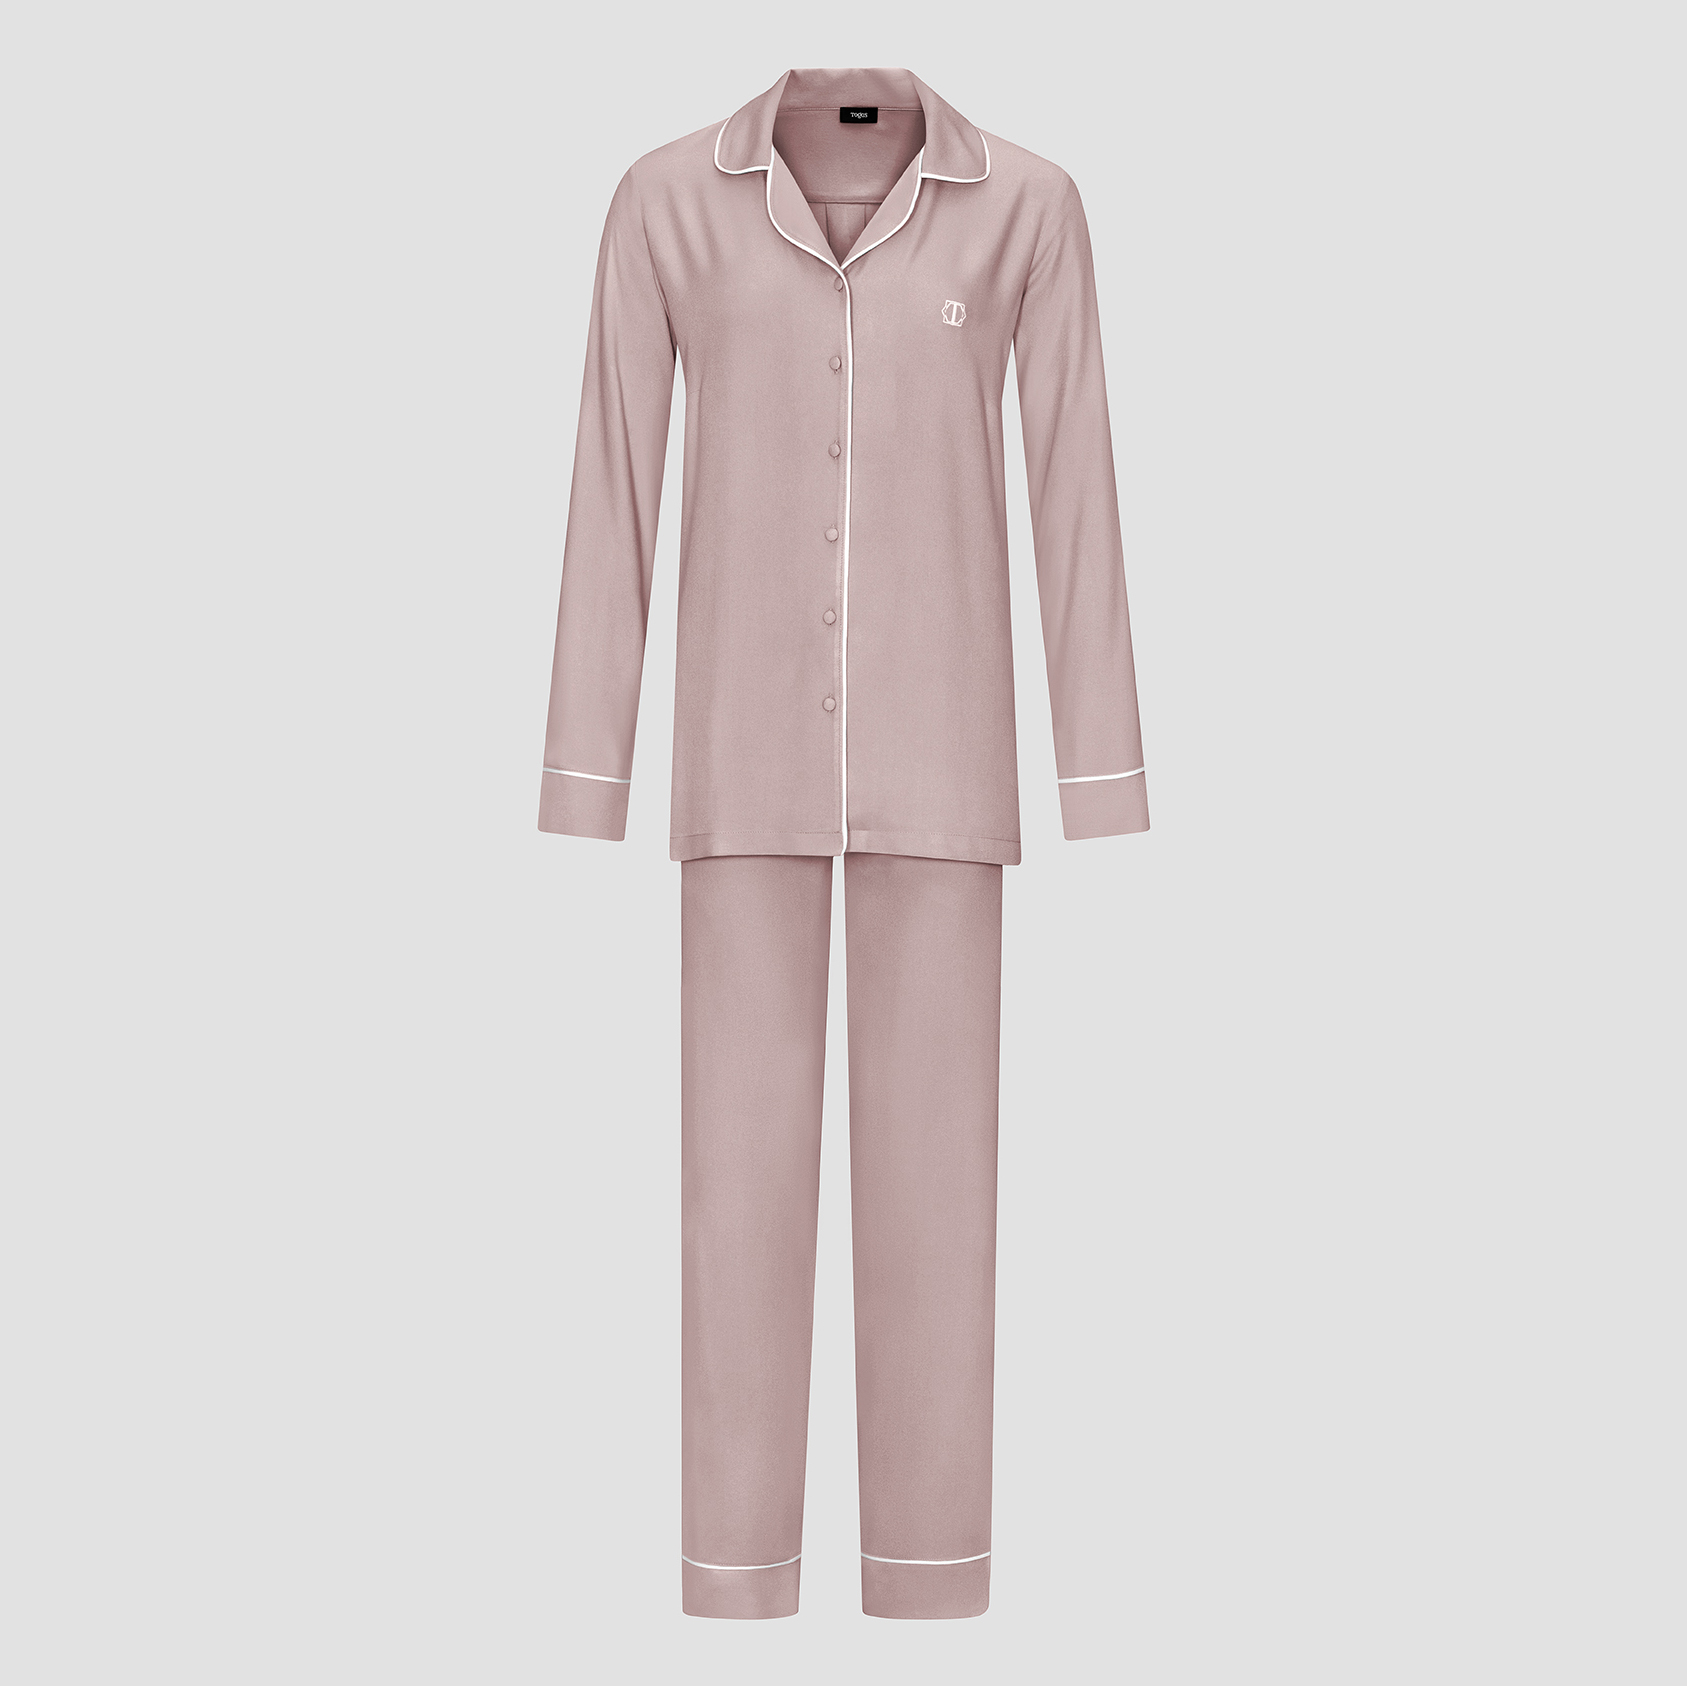 Пижама женская Togas Рамель розовая 2 предмета пижама джемпер брюки